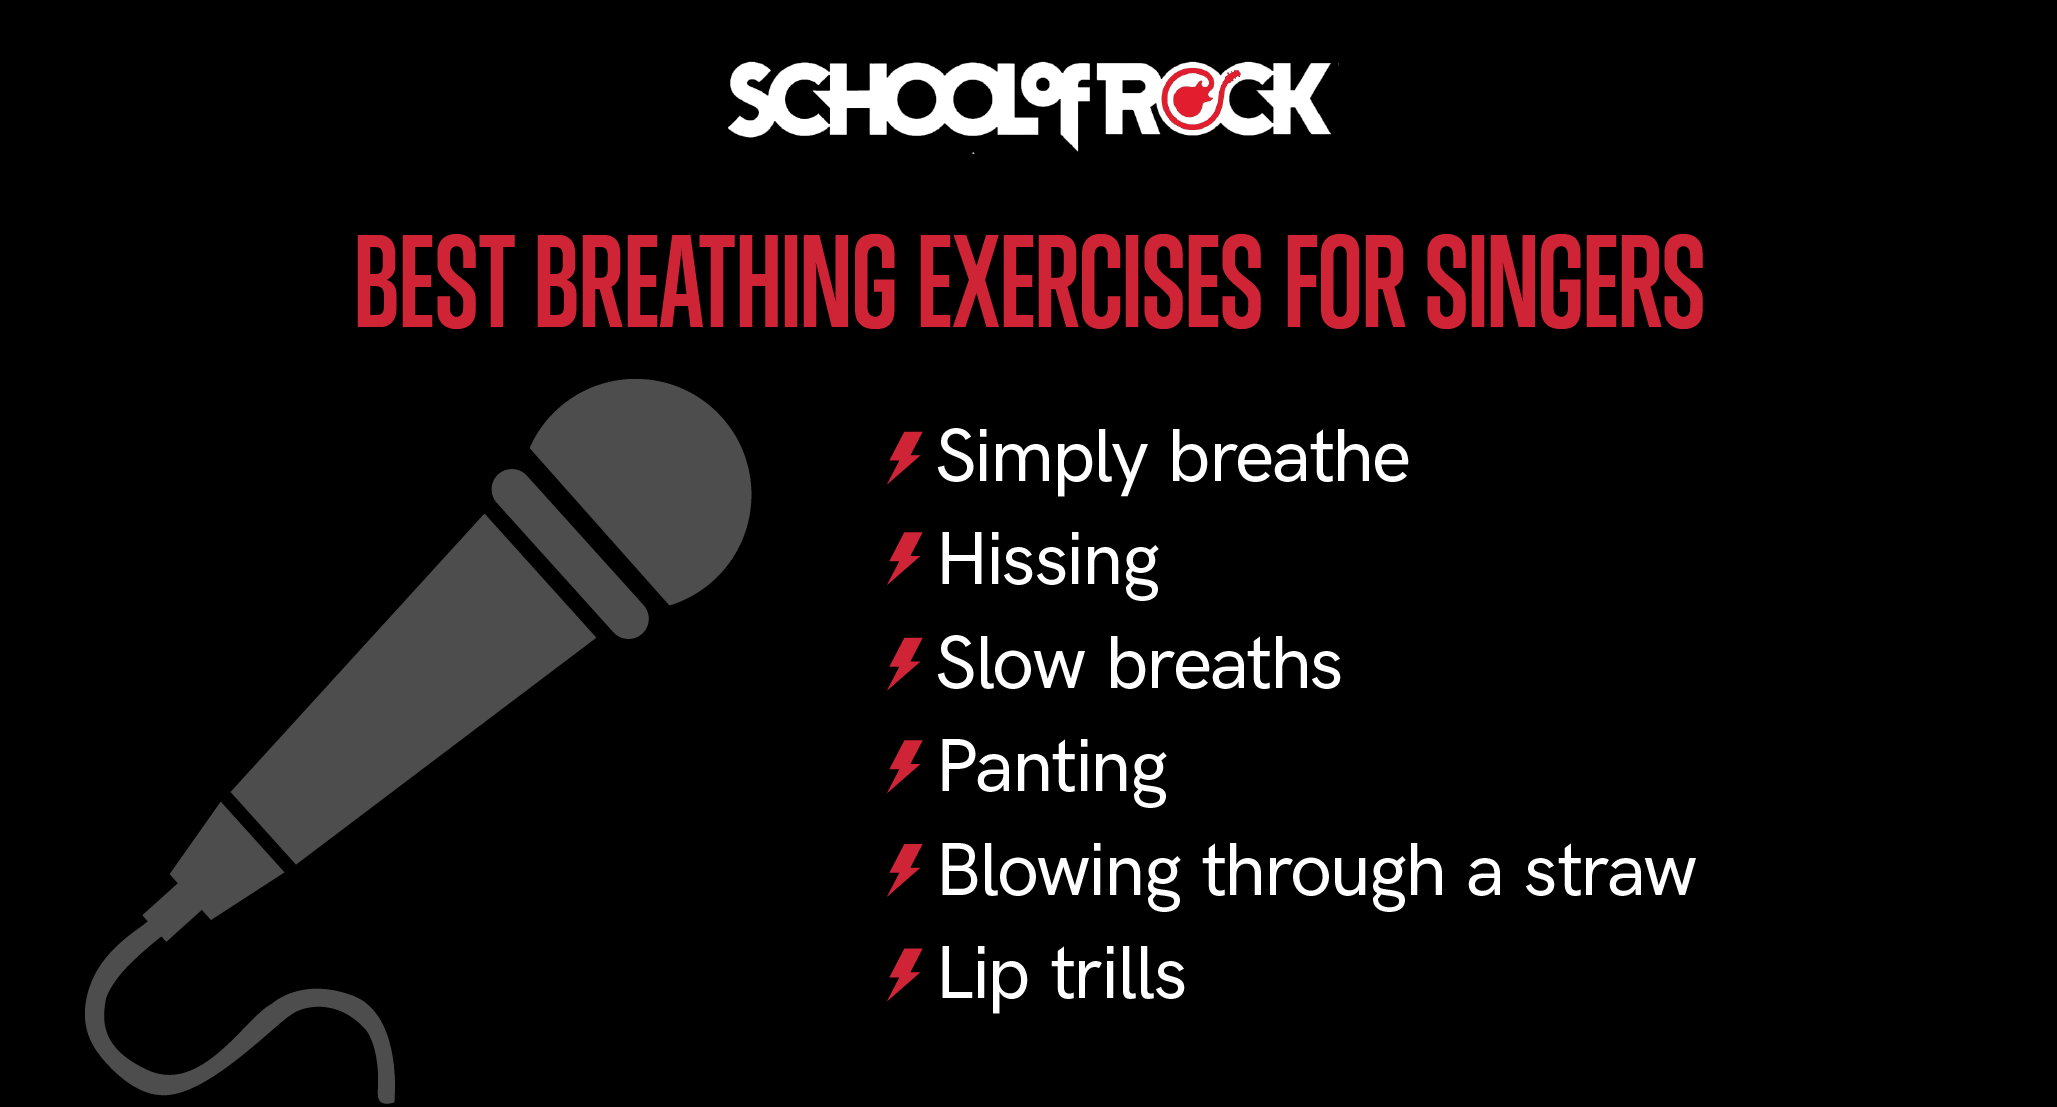 Best Breathing Exercises for Singers